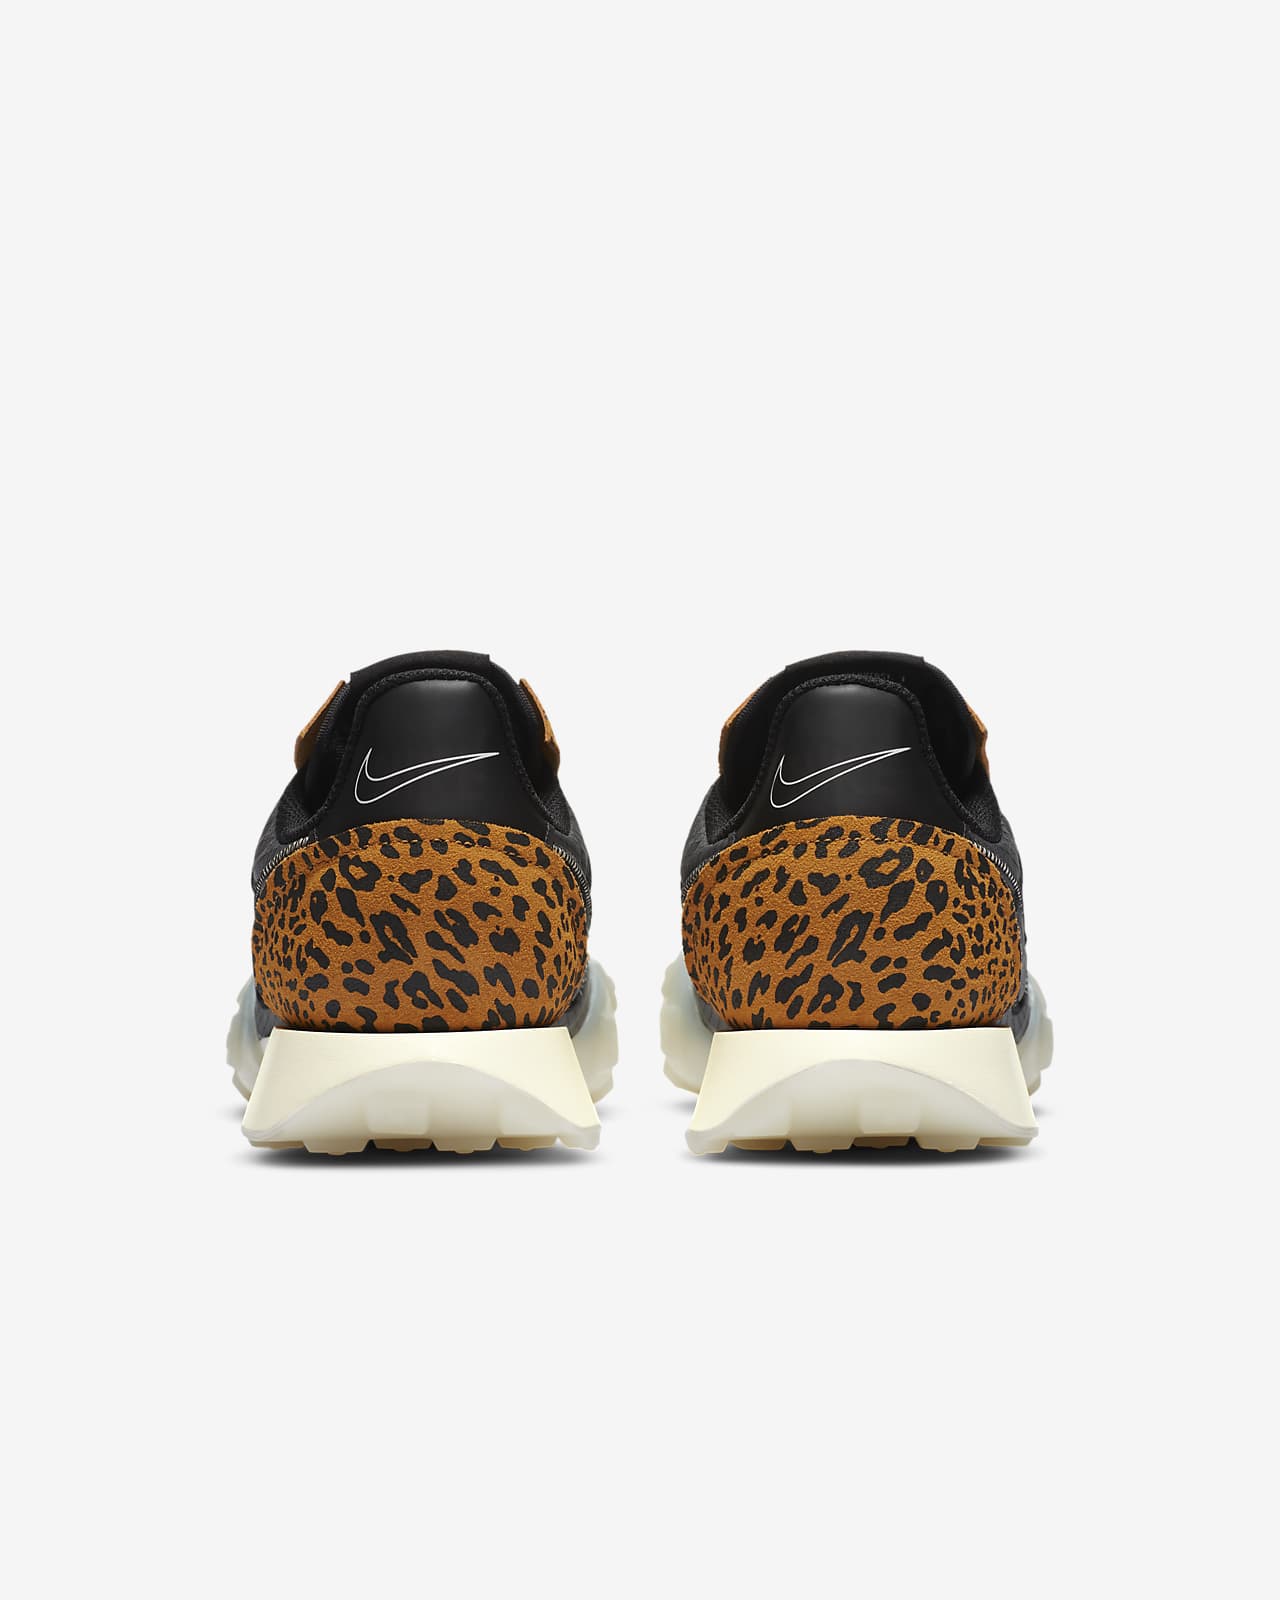 nike cheetah shoes